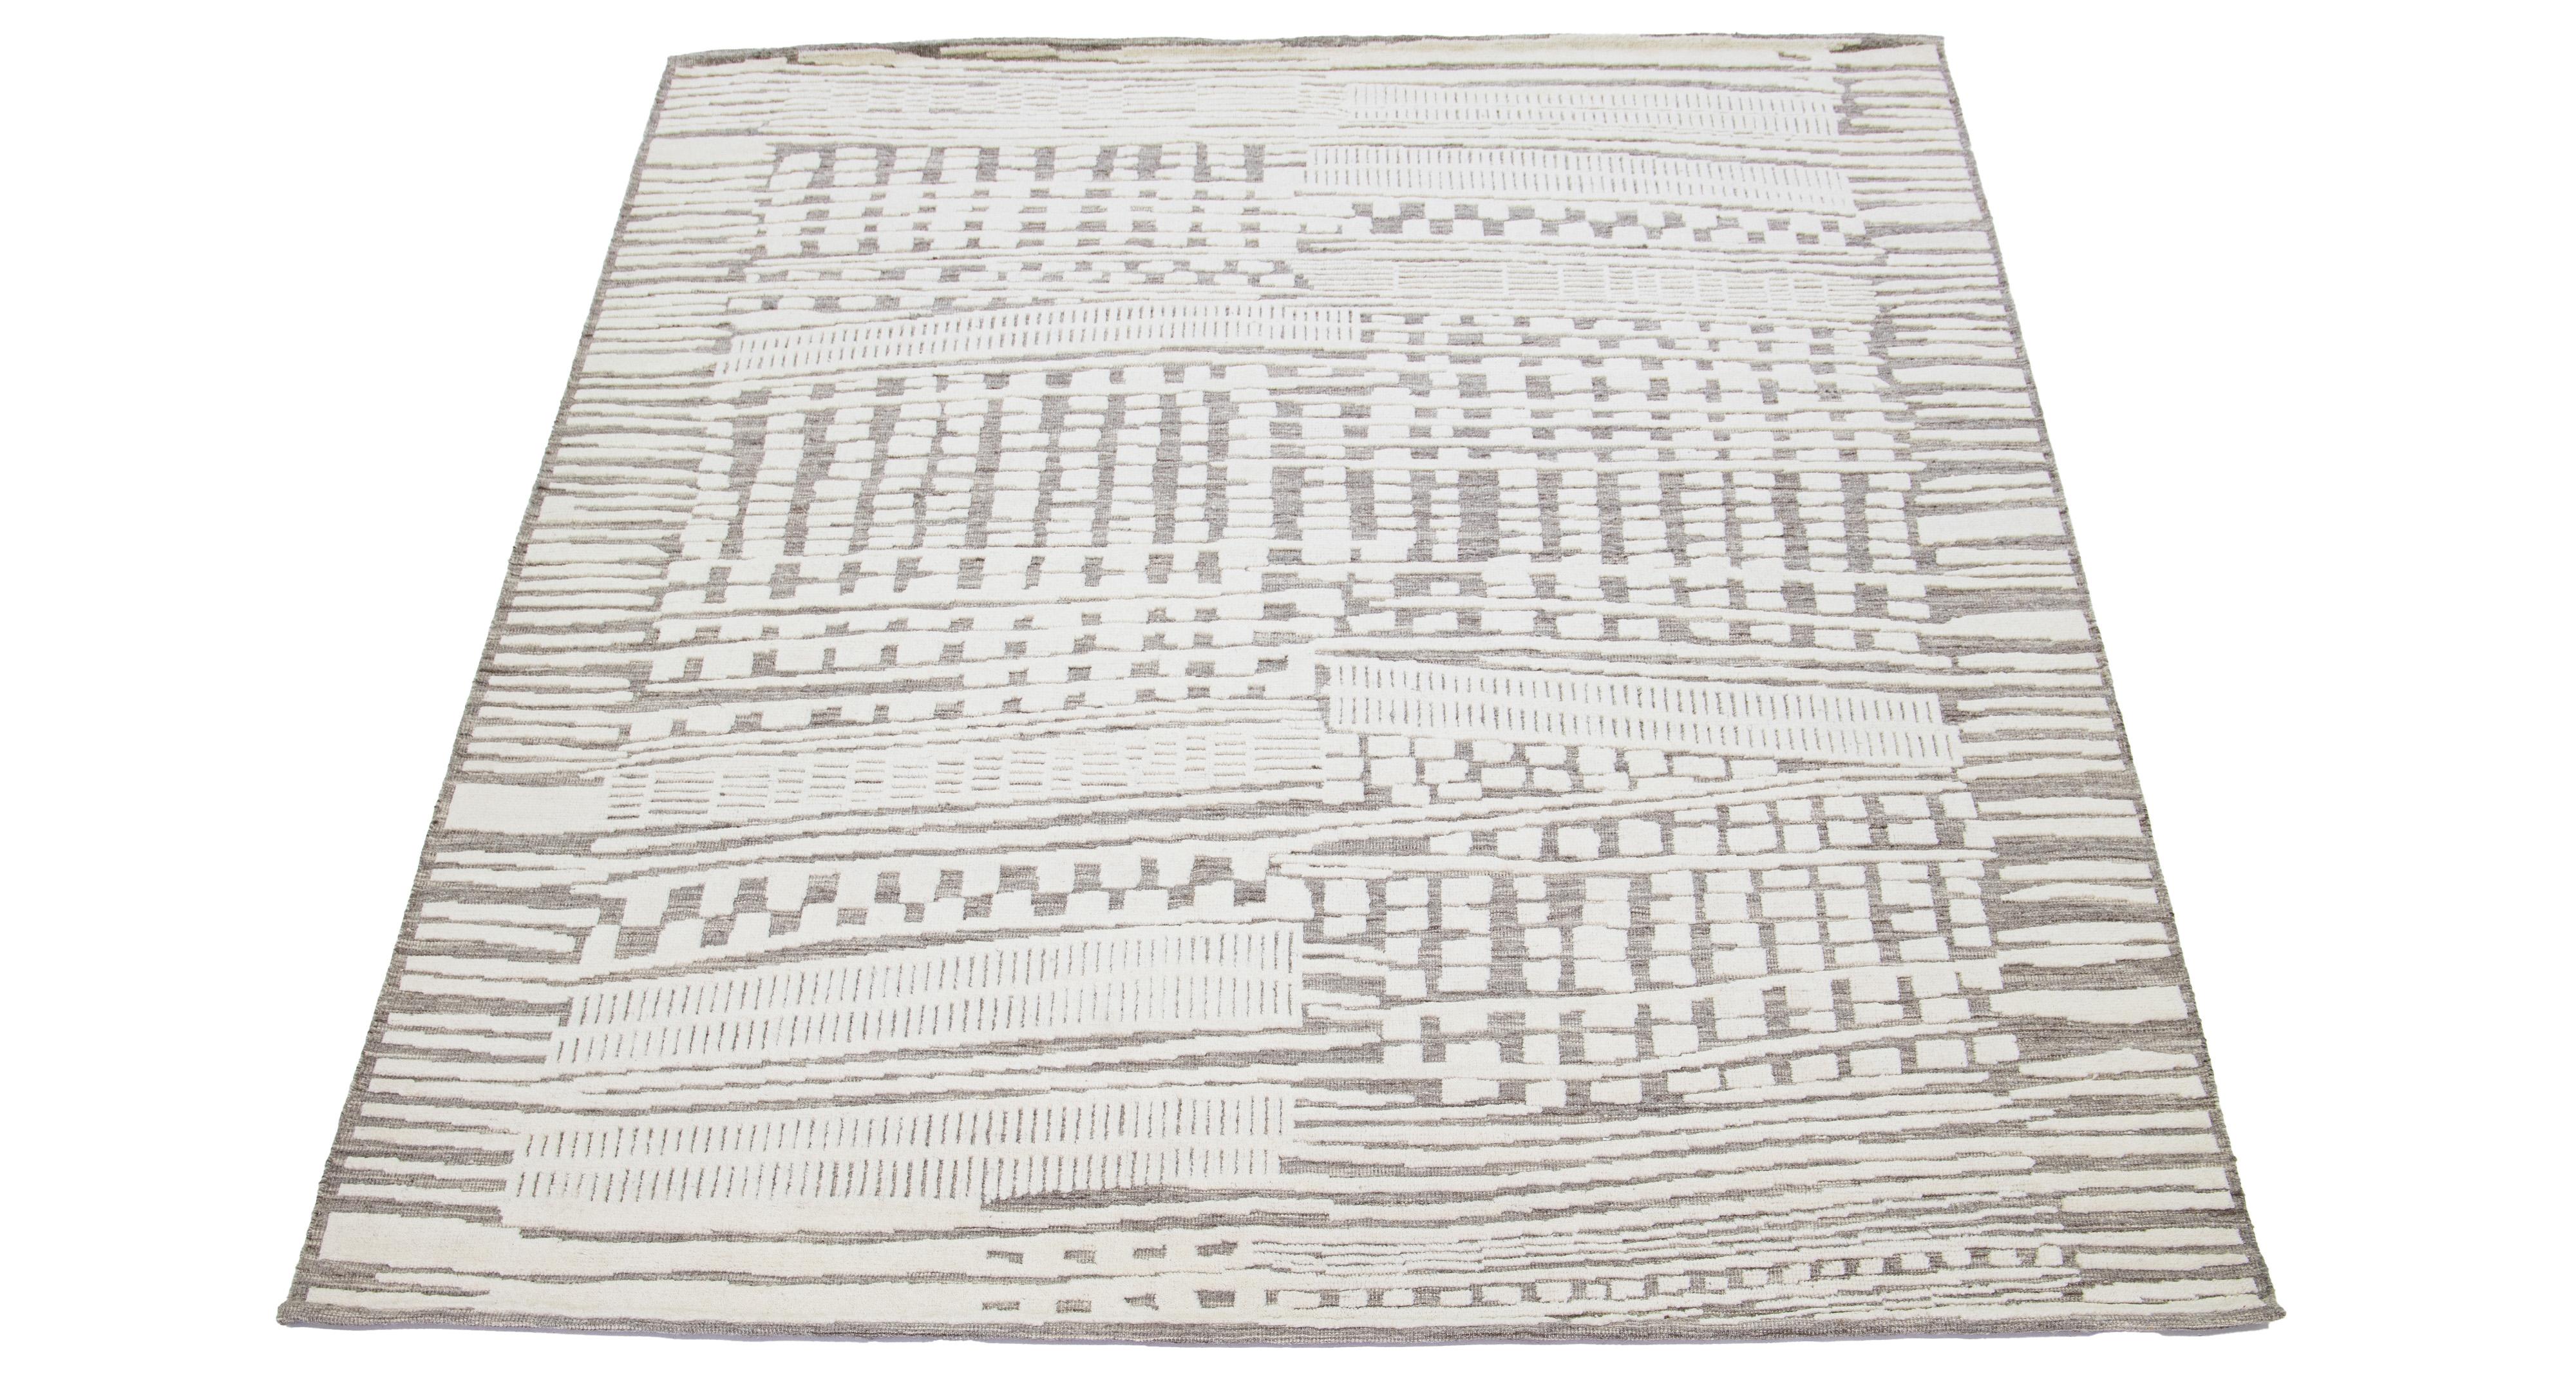 Dieser handgeknüpfte Wollteppich zeigt ein modernes, marokkanisch inspiriertes Motiv, das dezente Beigetöne vor einem kräftigen grauen Hintergrund hervorhebt und so ein fesselndes abstraktes Design schafft.

Dieser Teppich misst 8'1